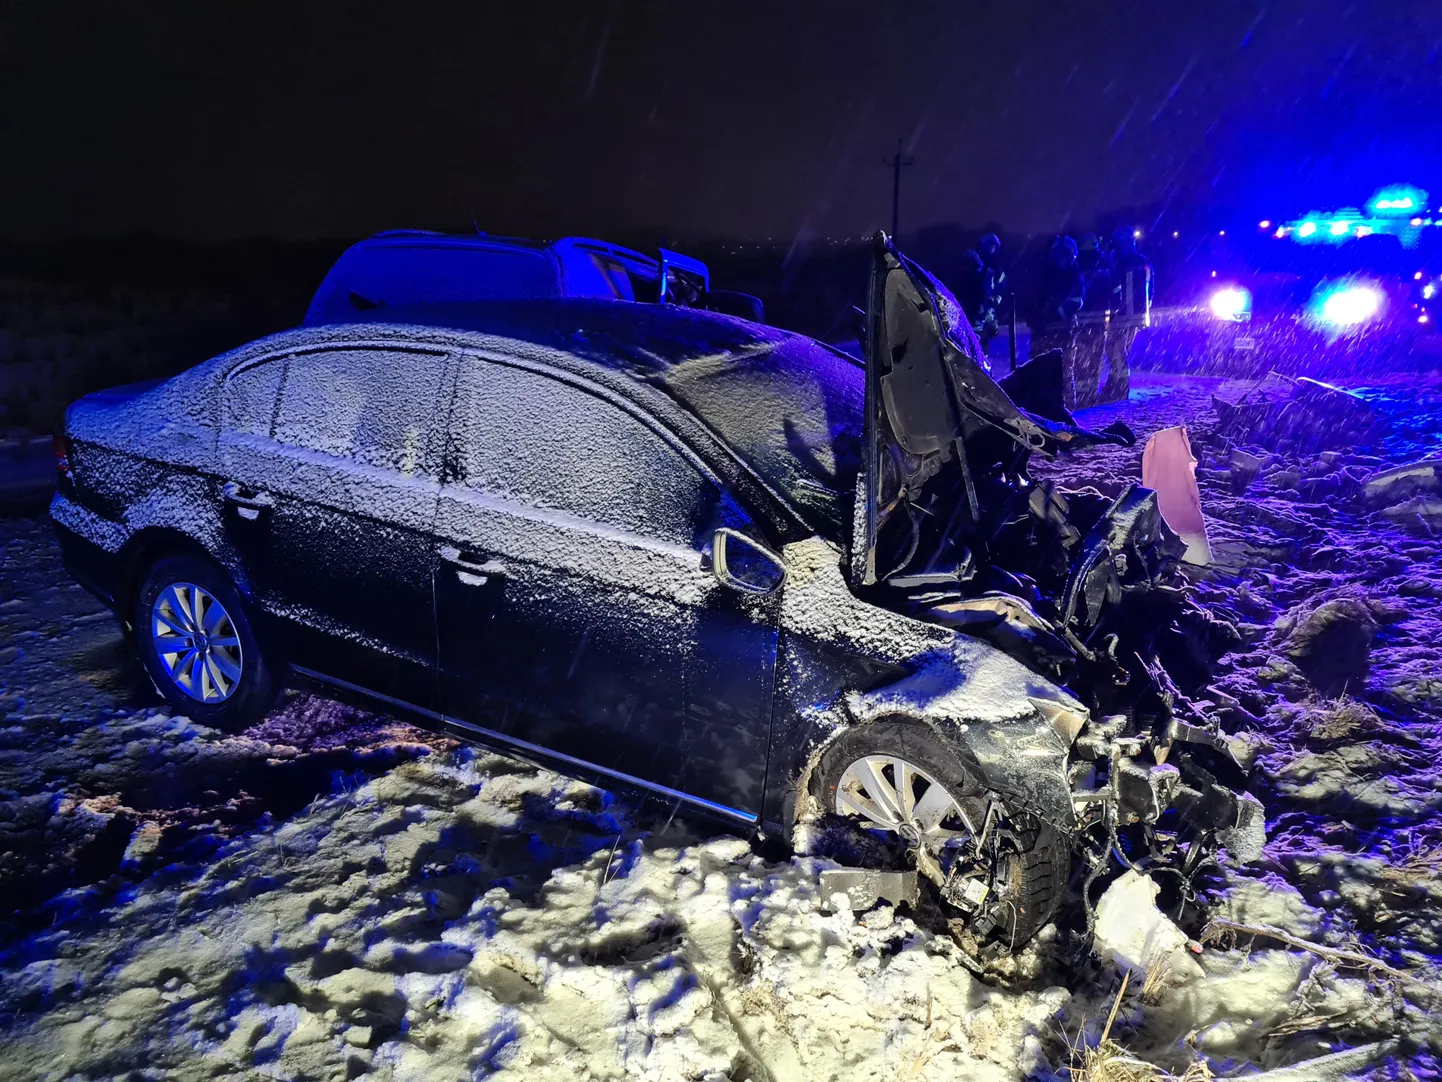 Raske õnnetus juhtus 28. jaanuari õhtul, kui Aardlapalu külas kaldus 51-aastase mehe juhitud Ford vastassuunavööndisse ning toimus laupkokkupõrge vastu sõitnud Volkswagen Passatiga.